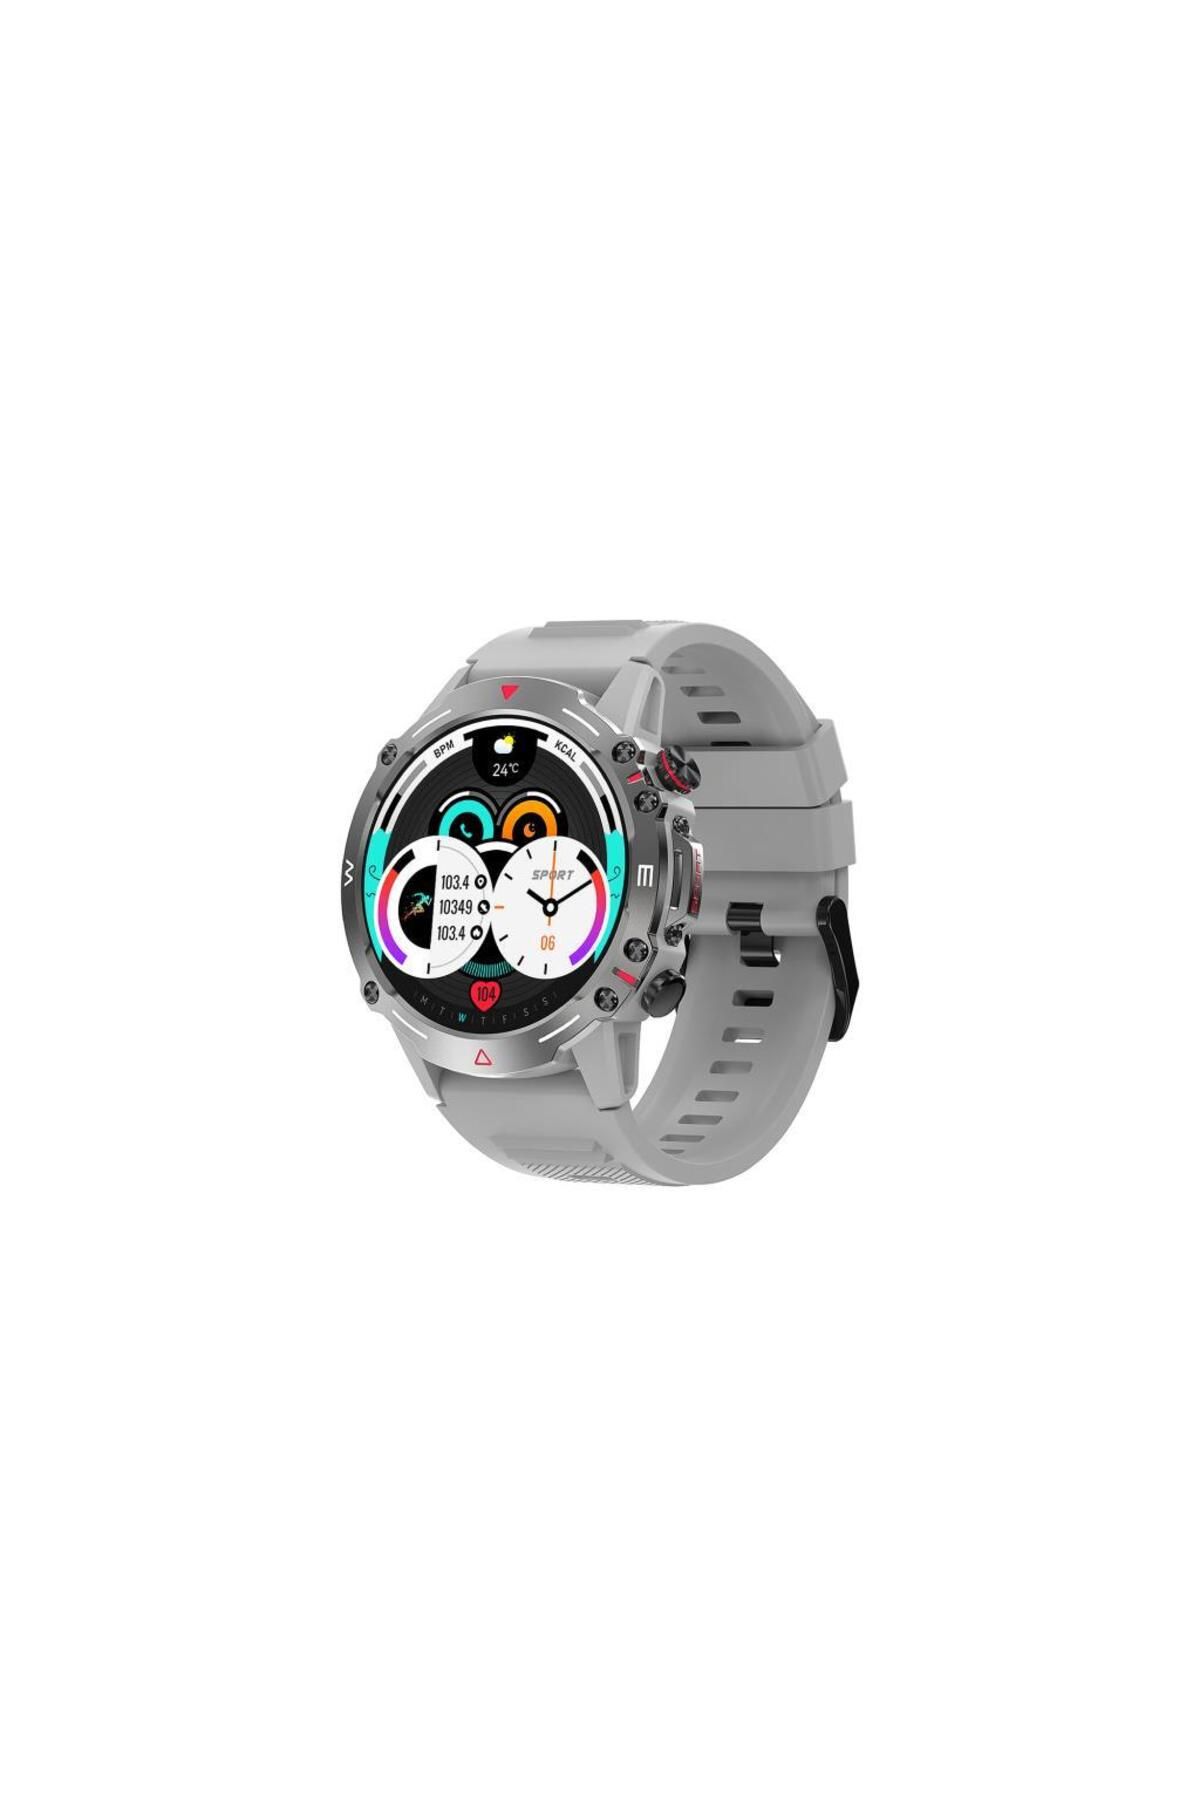 Sunix Smart Watch 1.43" Amoled Hd Ekran 410 Mah Pil Ömürlü Akıllı Saat Gri